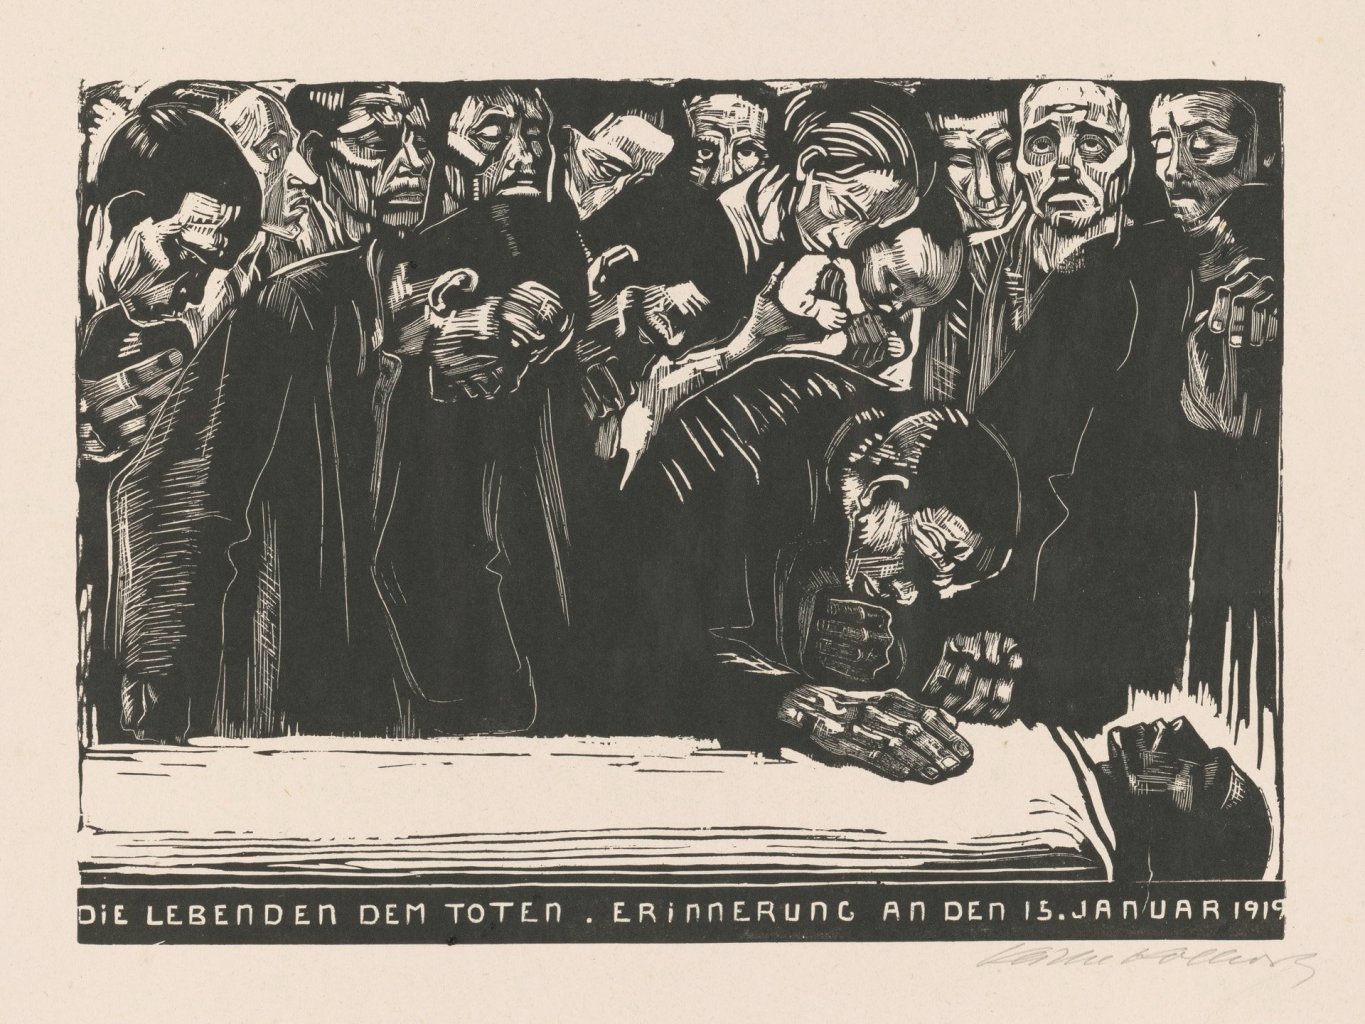 Holzschnitt von Trauernden, die sich über den Leichnam Karl Liebknechts beugen, gestaltet von Käthe Kollwitz.